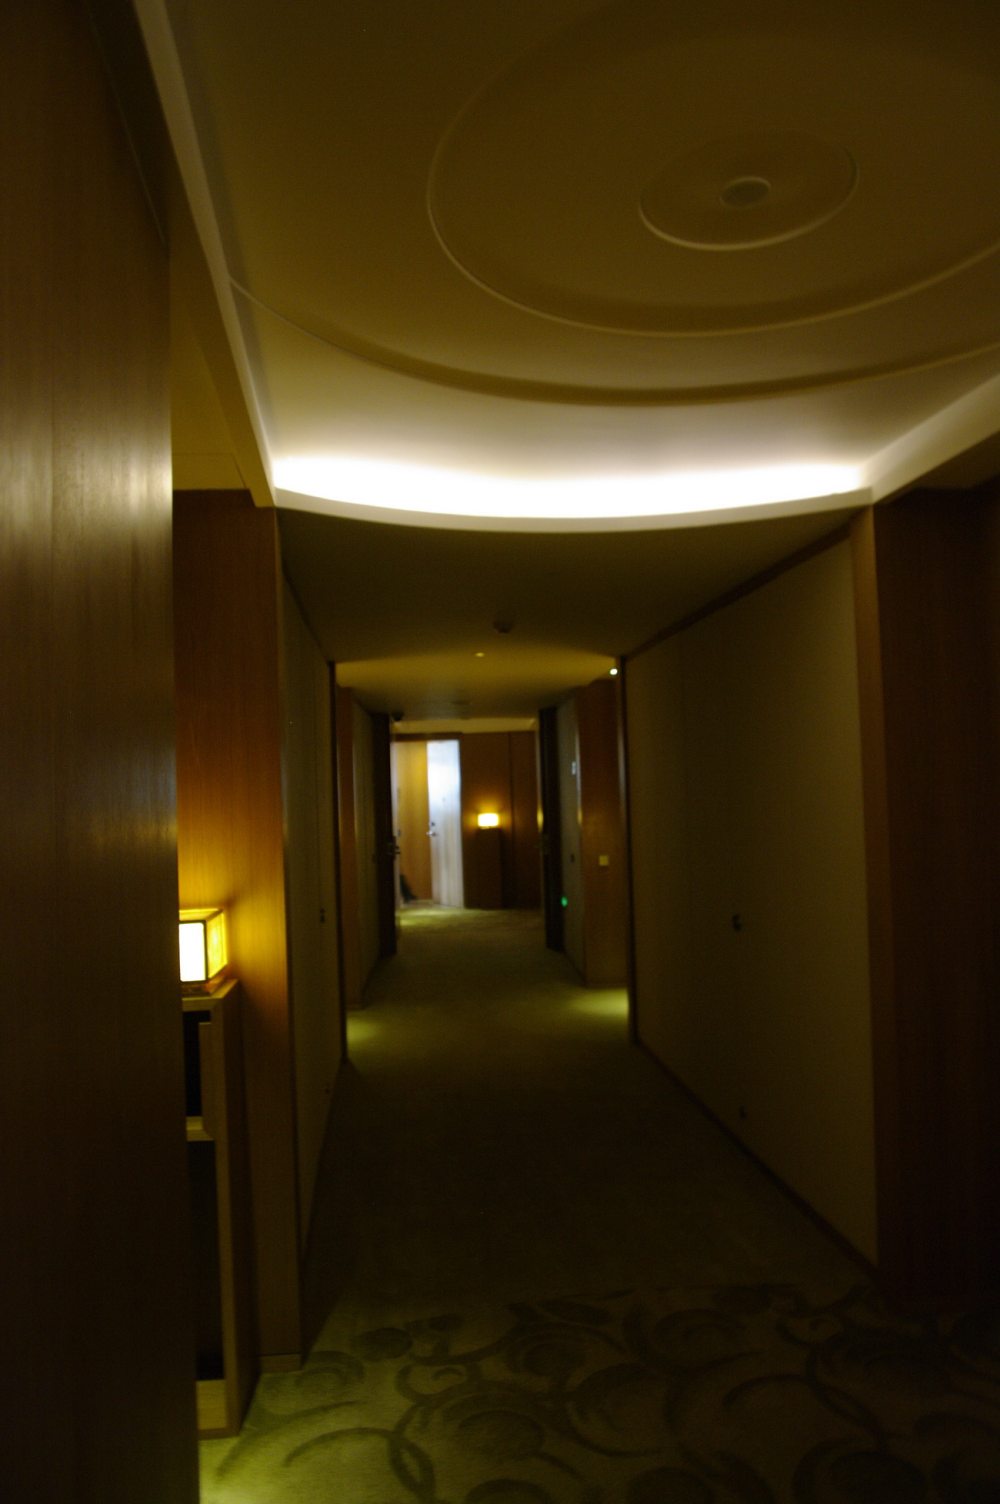 苏州晋合洲际Intercontinental酒店--2012.06.24第八页更新客房__IGP3787.JPG